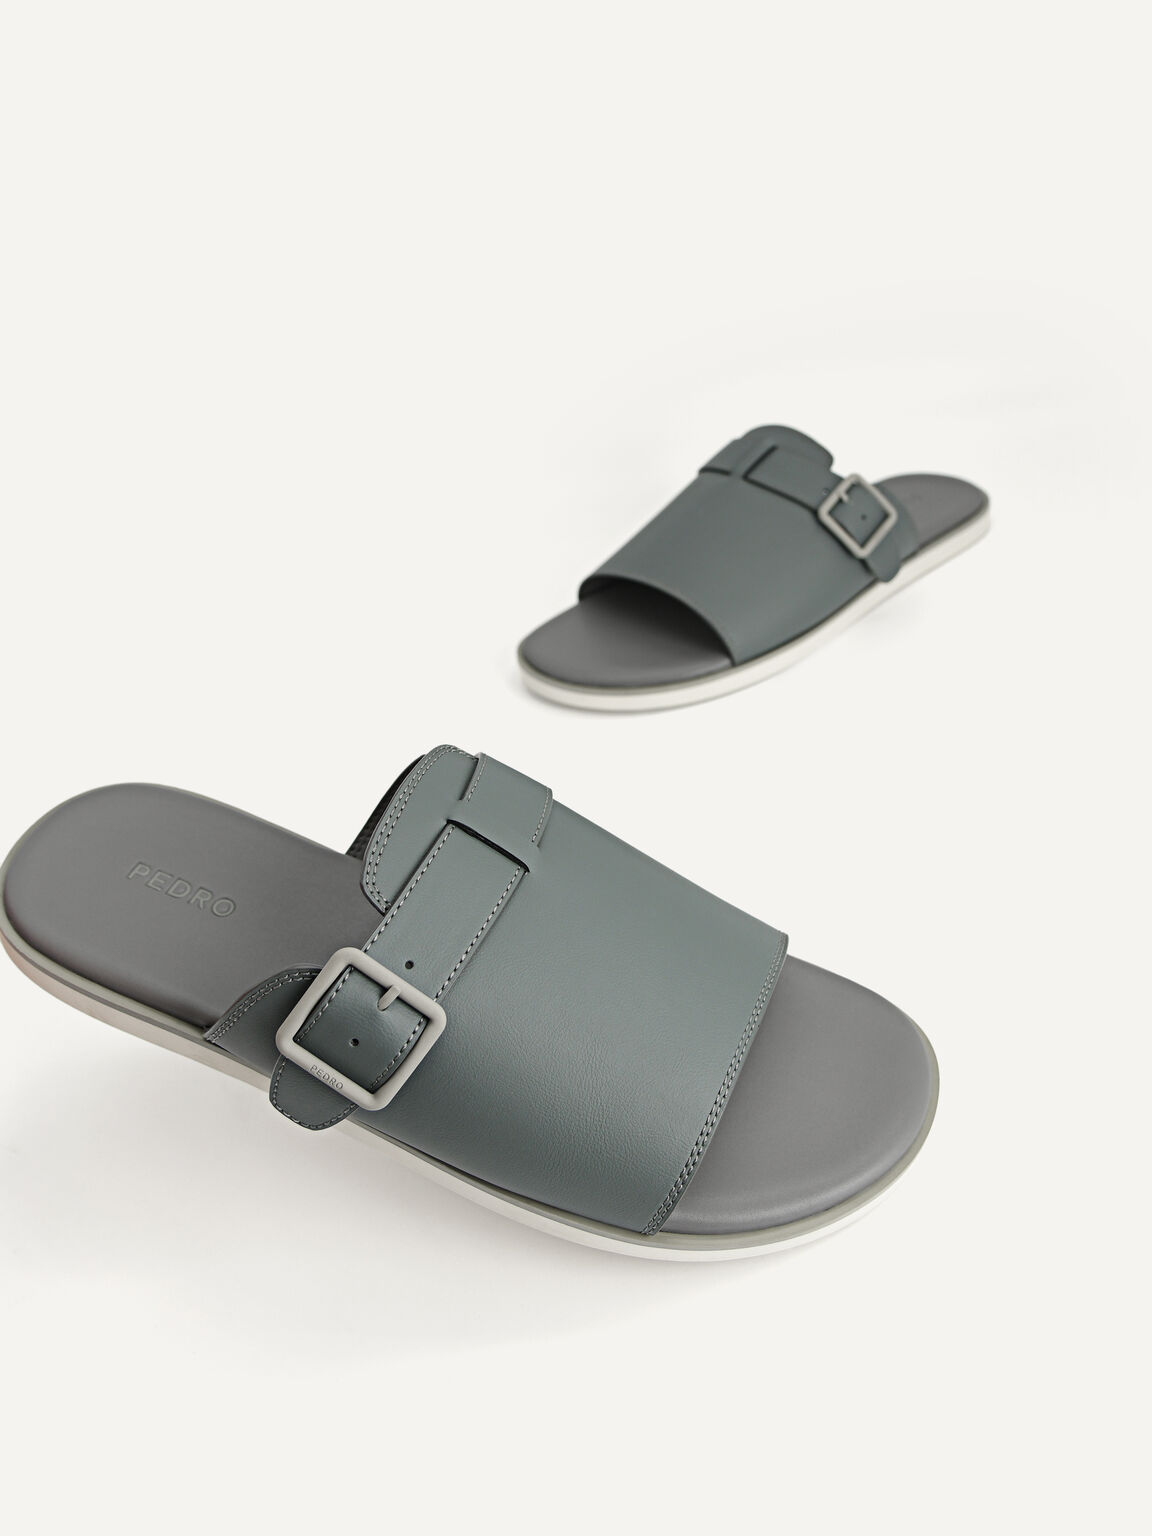 Monochrome Slide Sandals, Dark Grey